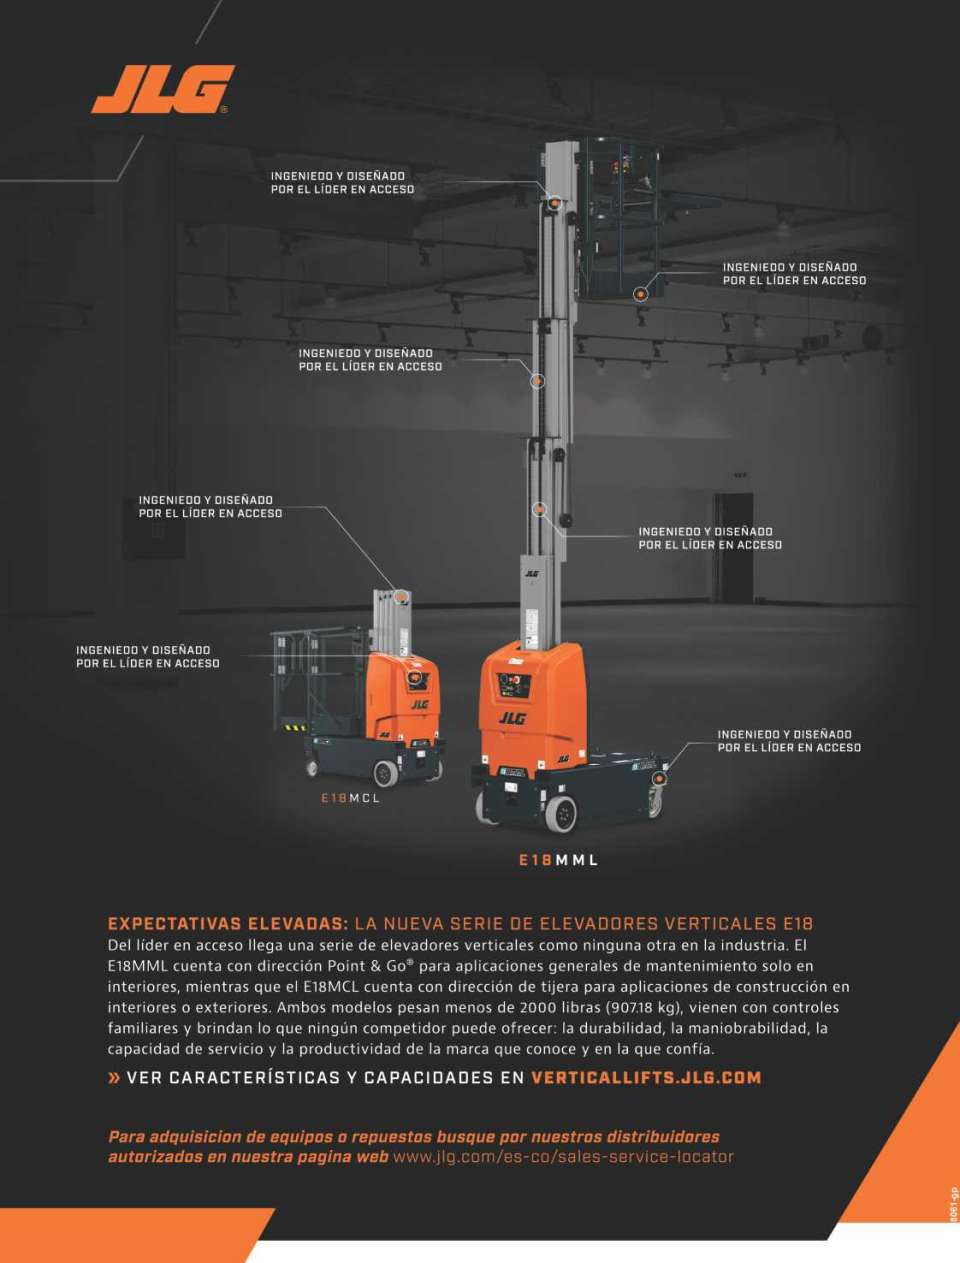 SERIE DE ELEVACIÓN VERTICAL E18 COMPLETAMENTE NUEVA. Del lider en acceso llega una serie de elevadores verticales. Con modelos para aplicaciones en interiores o exteriores, pesa menos de 2,000 lb.